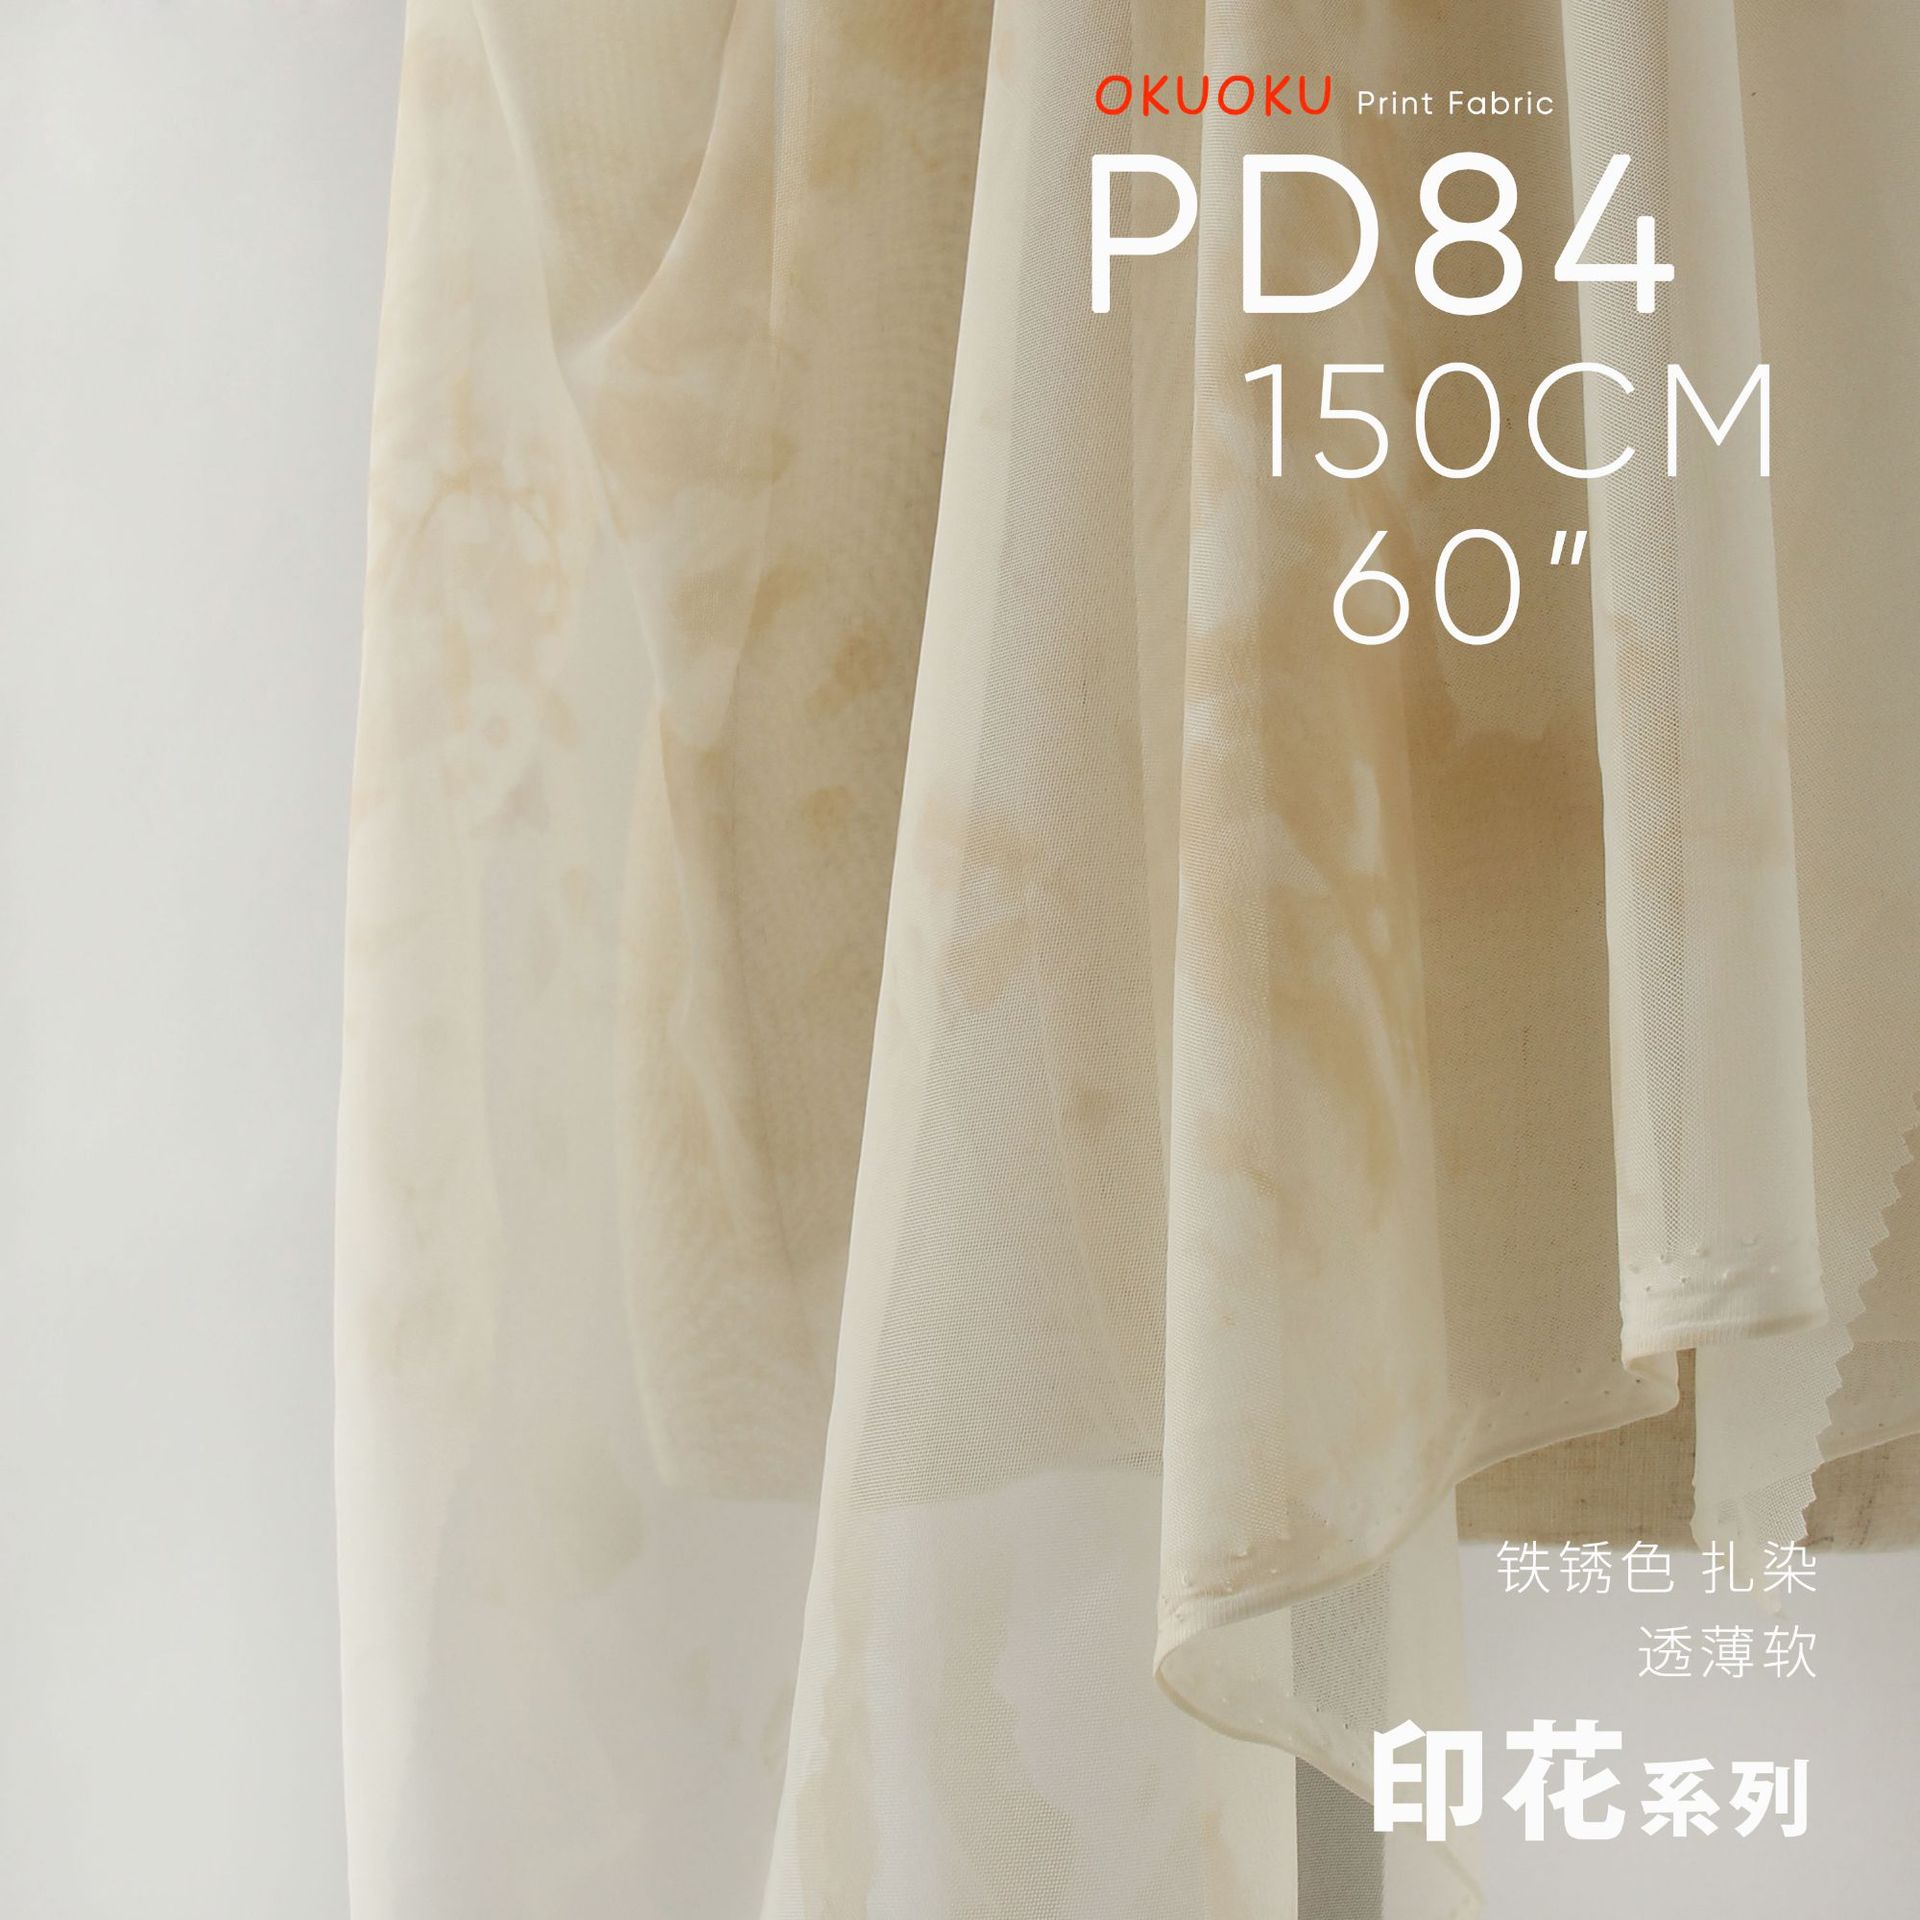 手工扎染淡印 朦胧植物染网孔网布设计师布料原创印花面料PD84